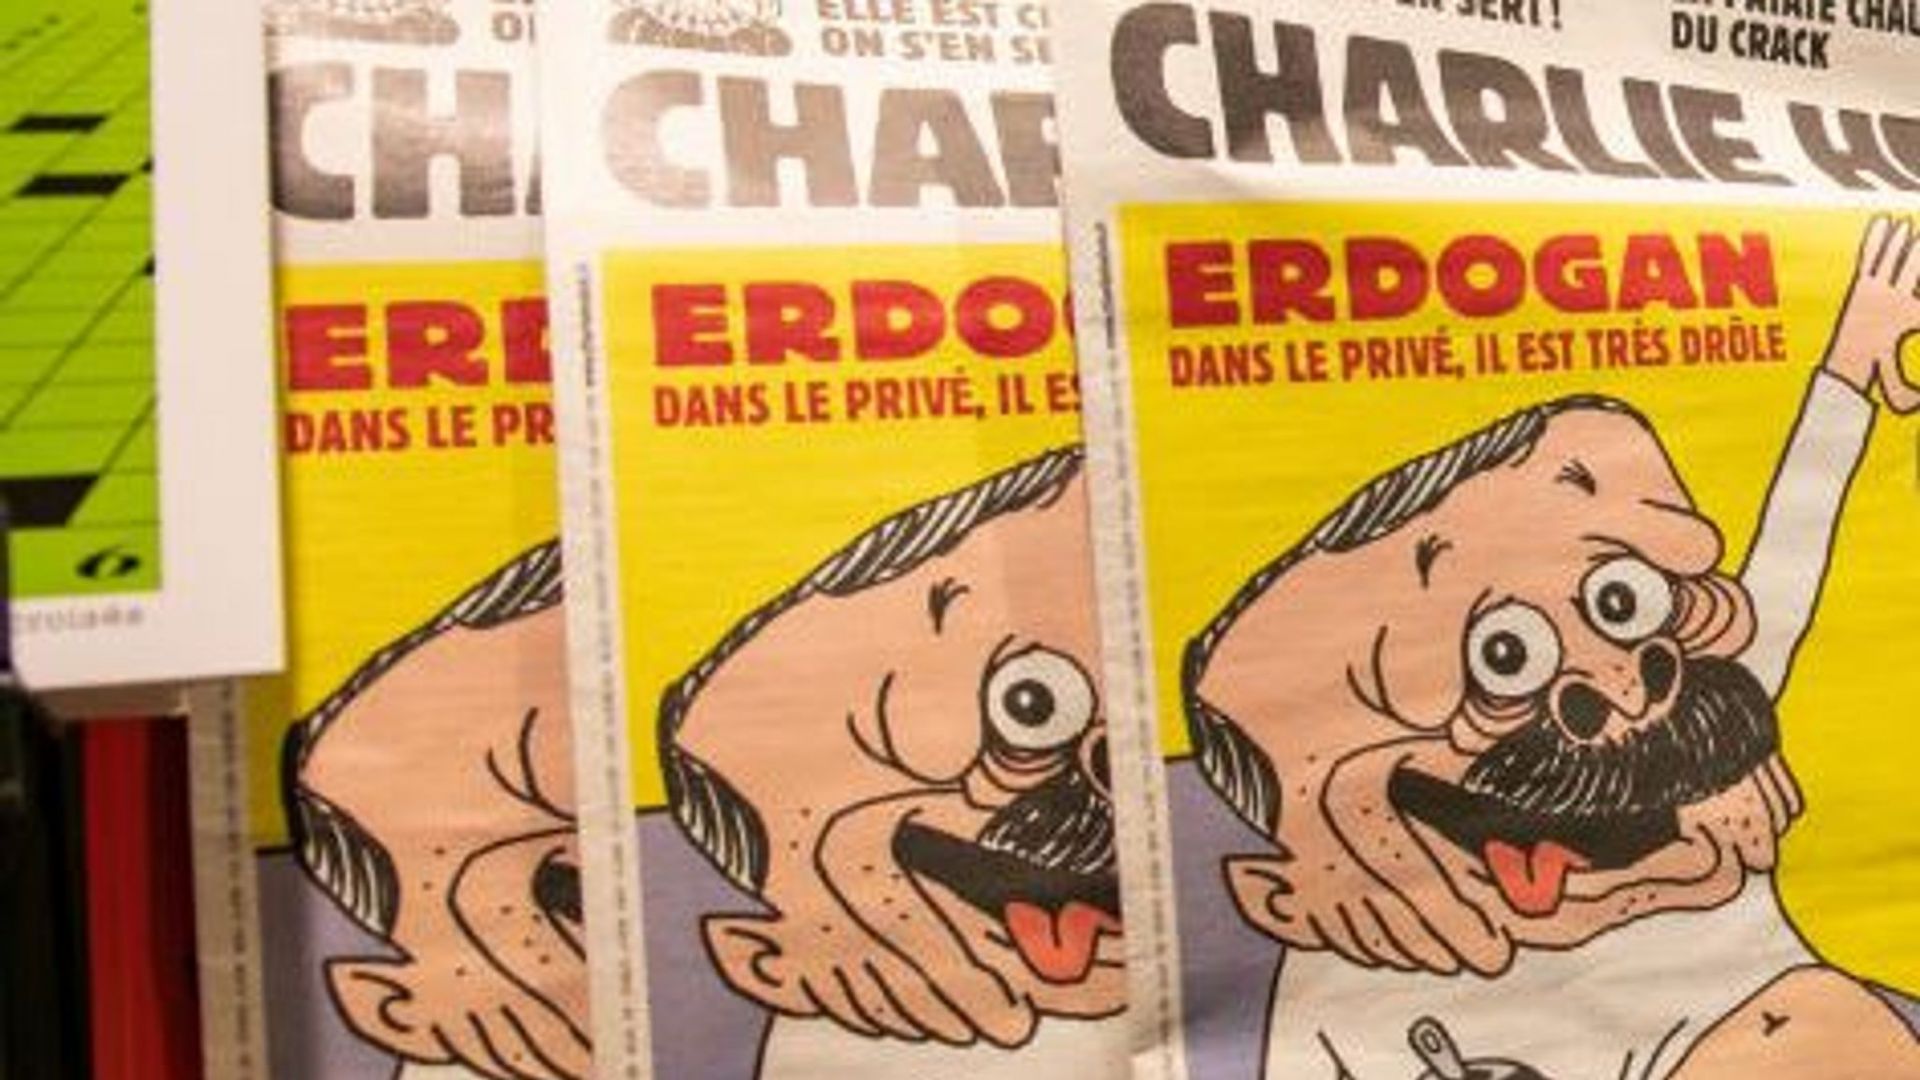 Турски прокурор иска да вкара в затвора сътрудници на "Шарли ебдо" заради карикатурата с Ердоган